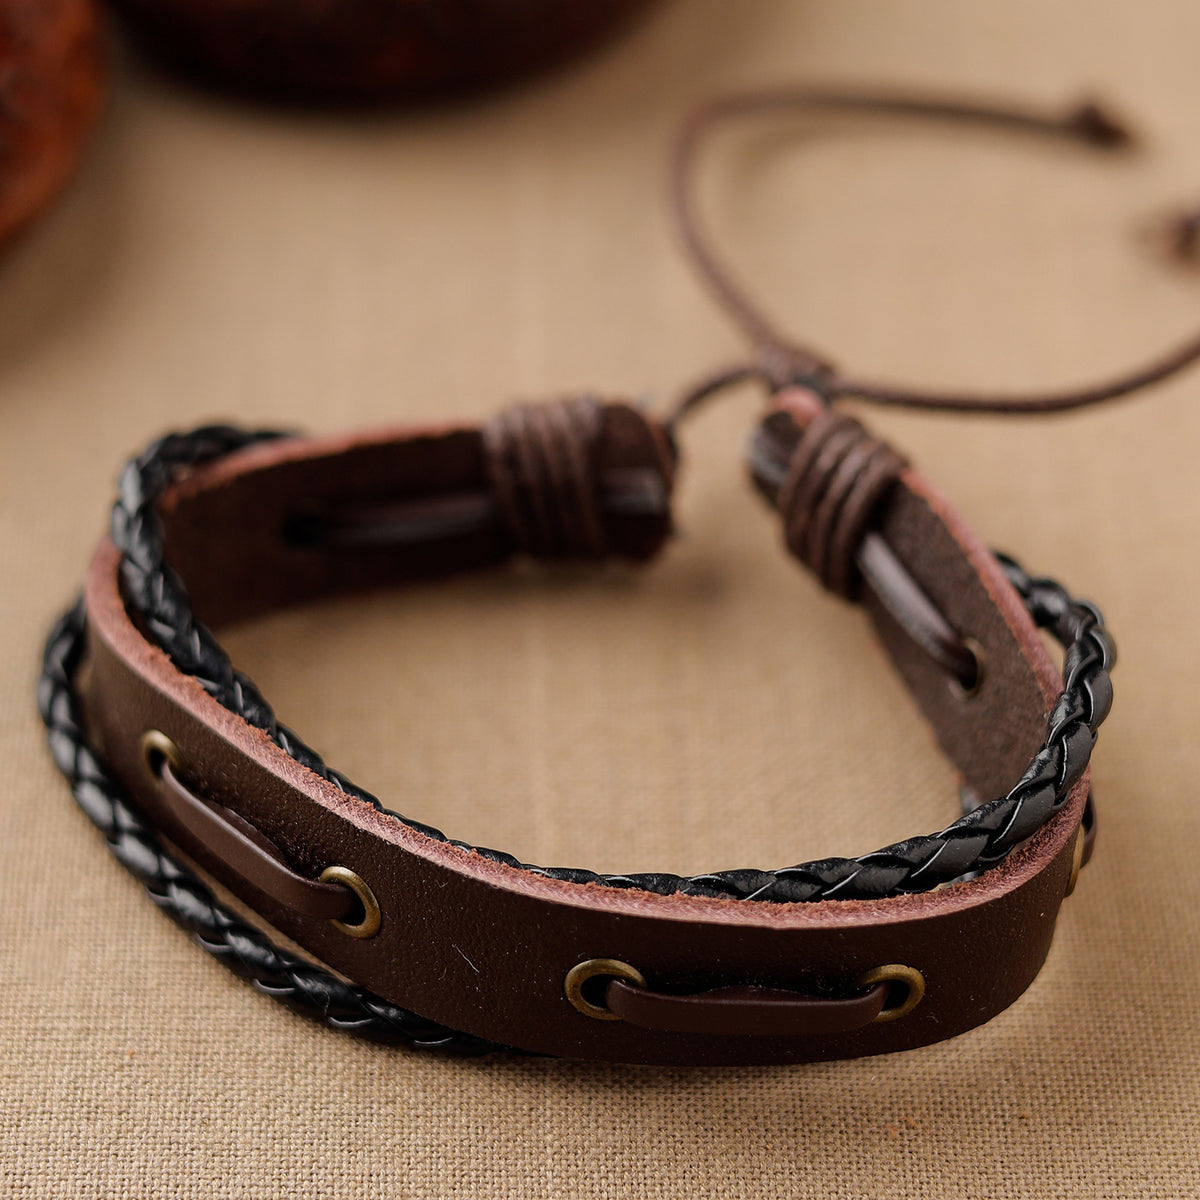 Handmade Leather Bracelet Rakhi 68